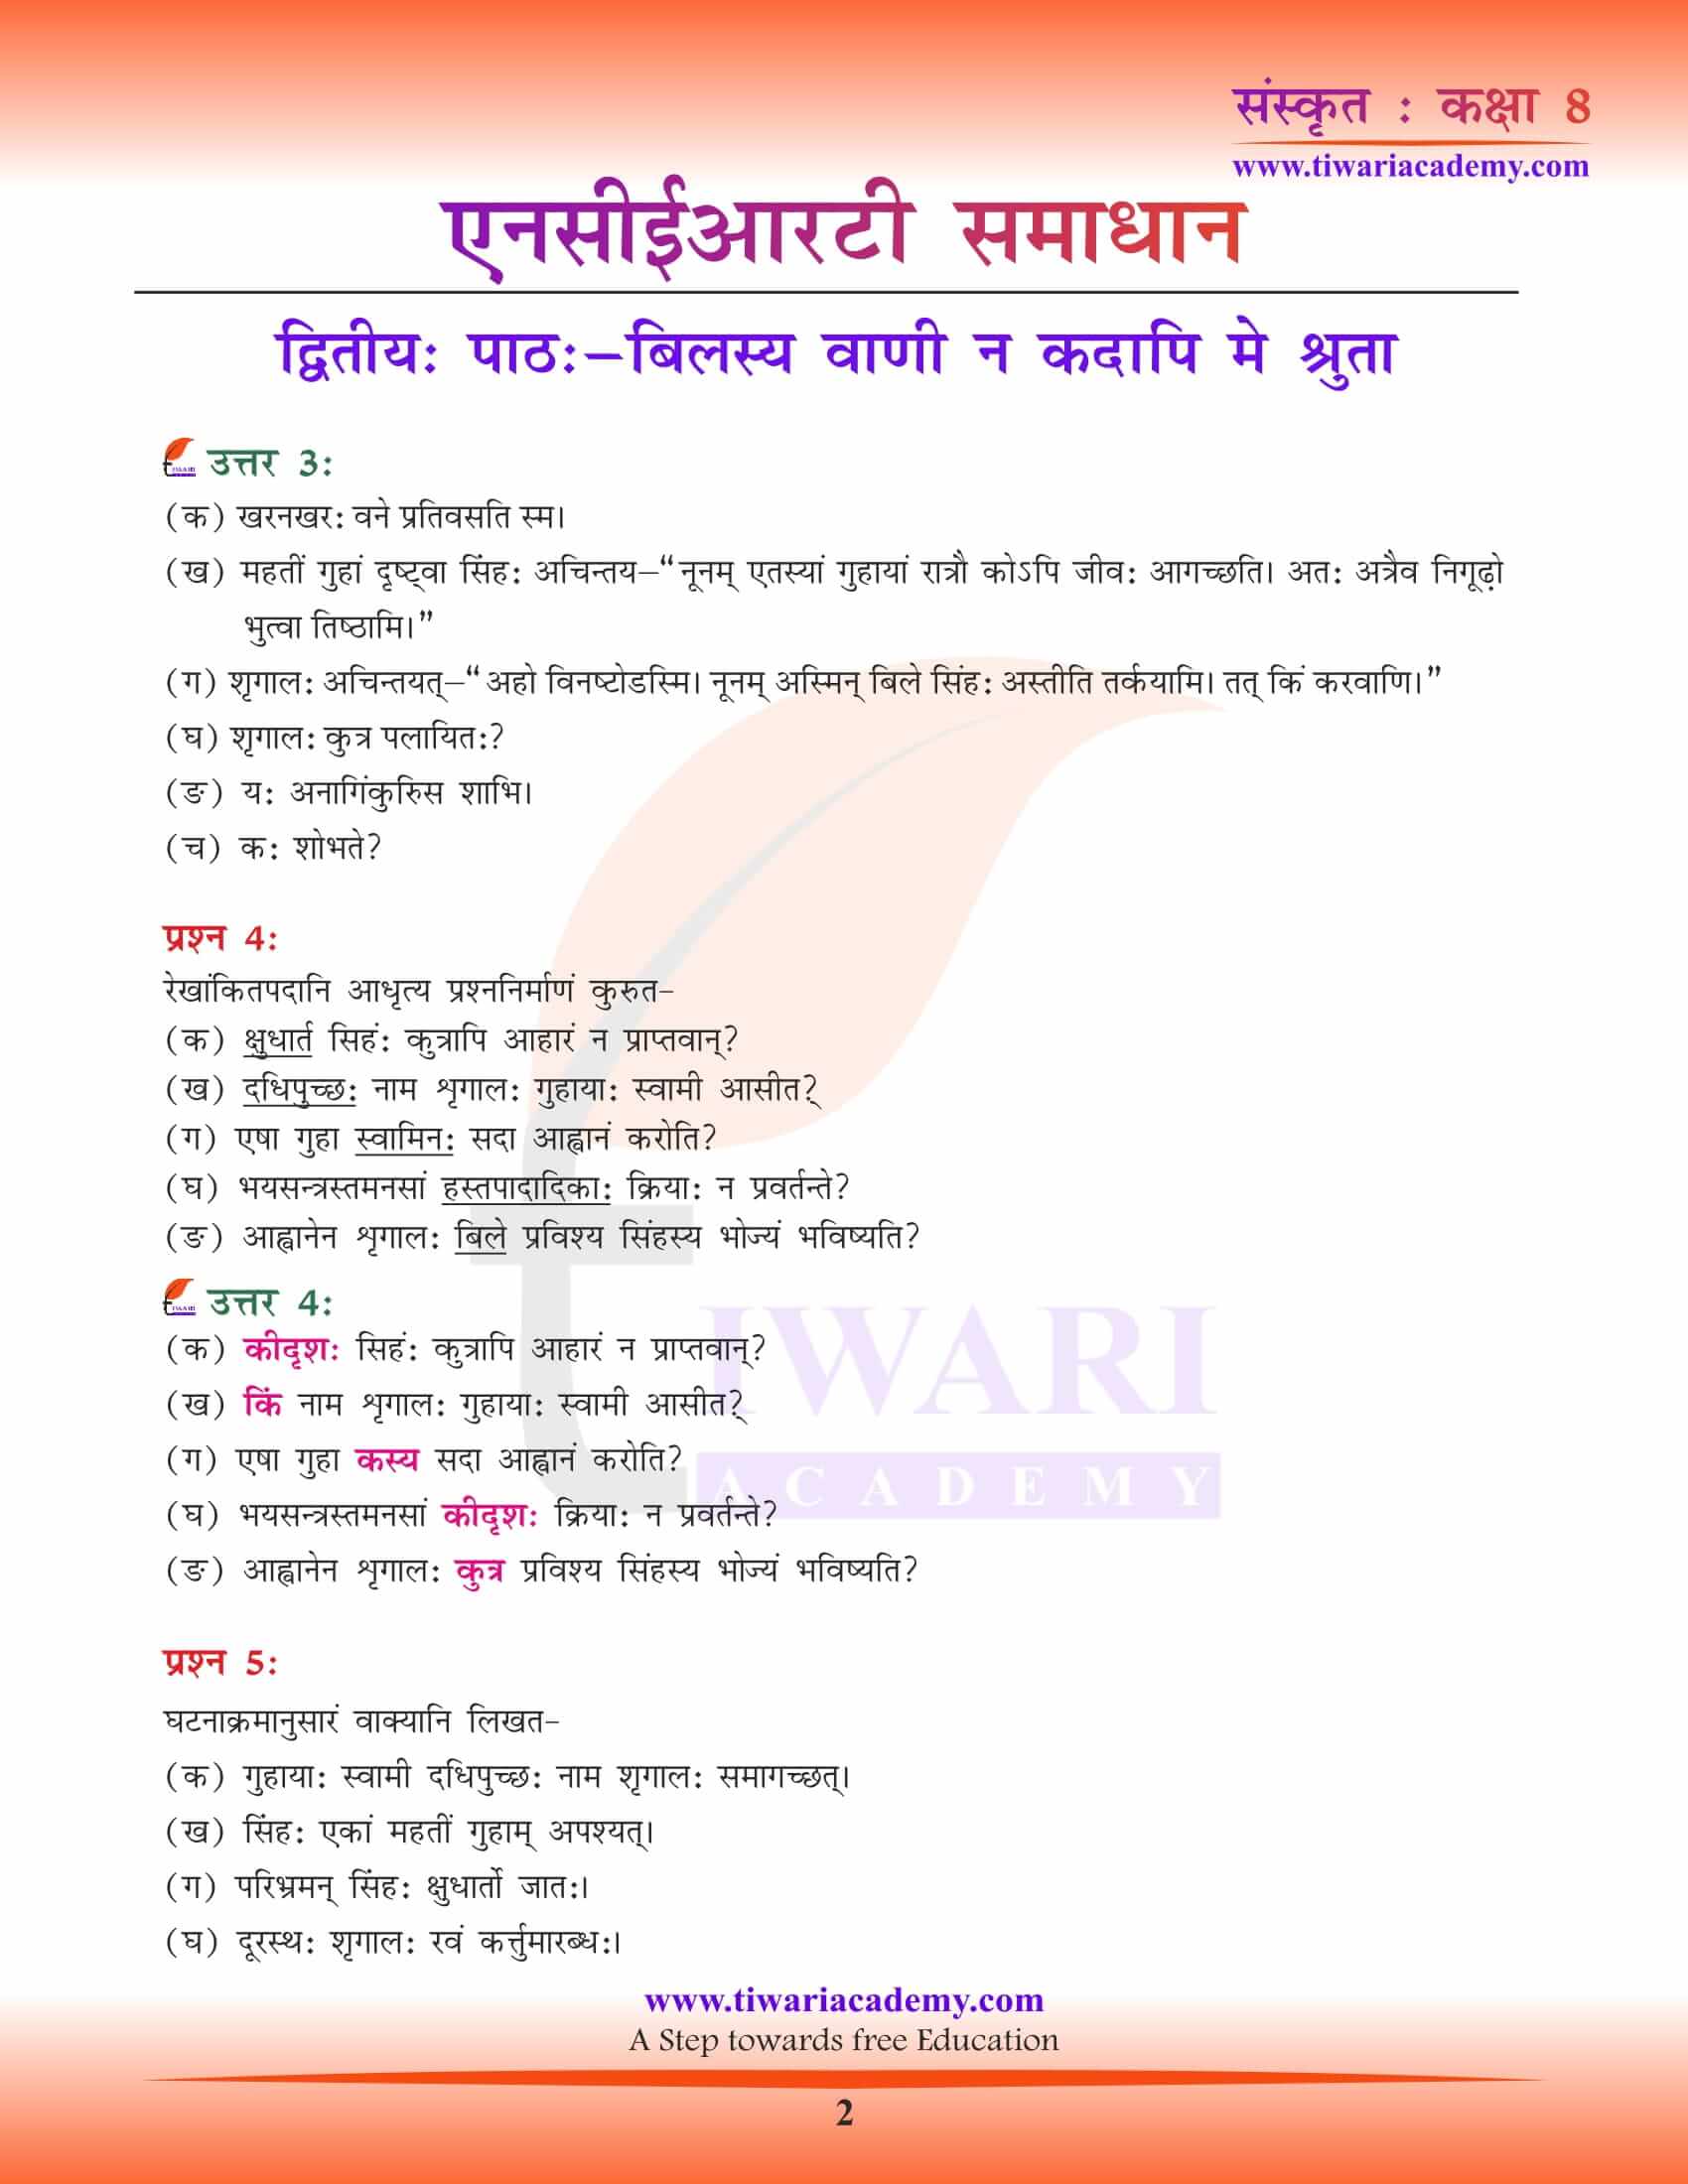 NCERT Solutions for Class 8 Sanskrit Chapter 2 pdf